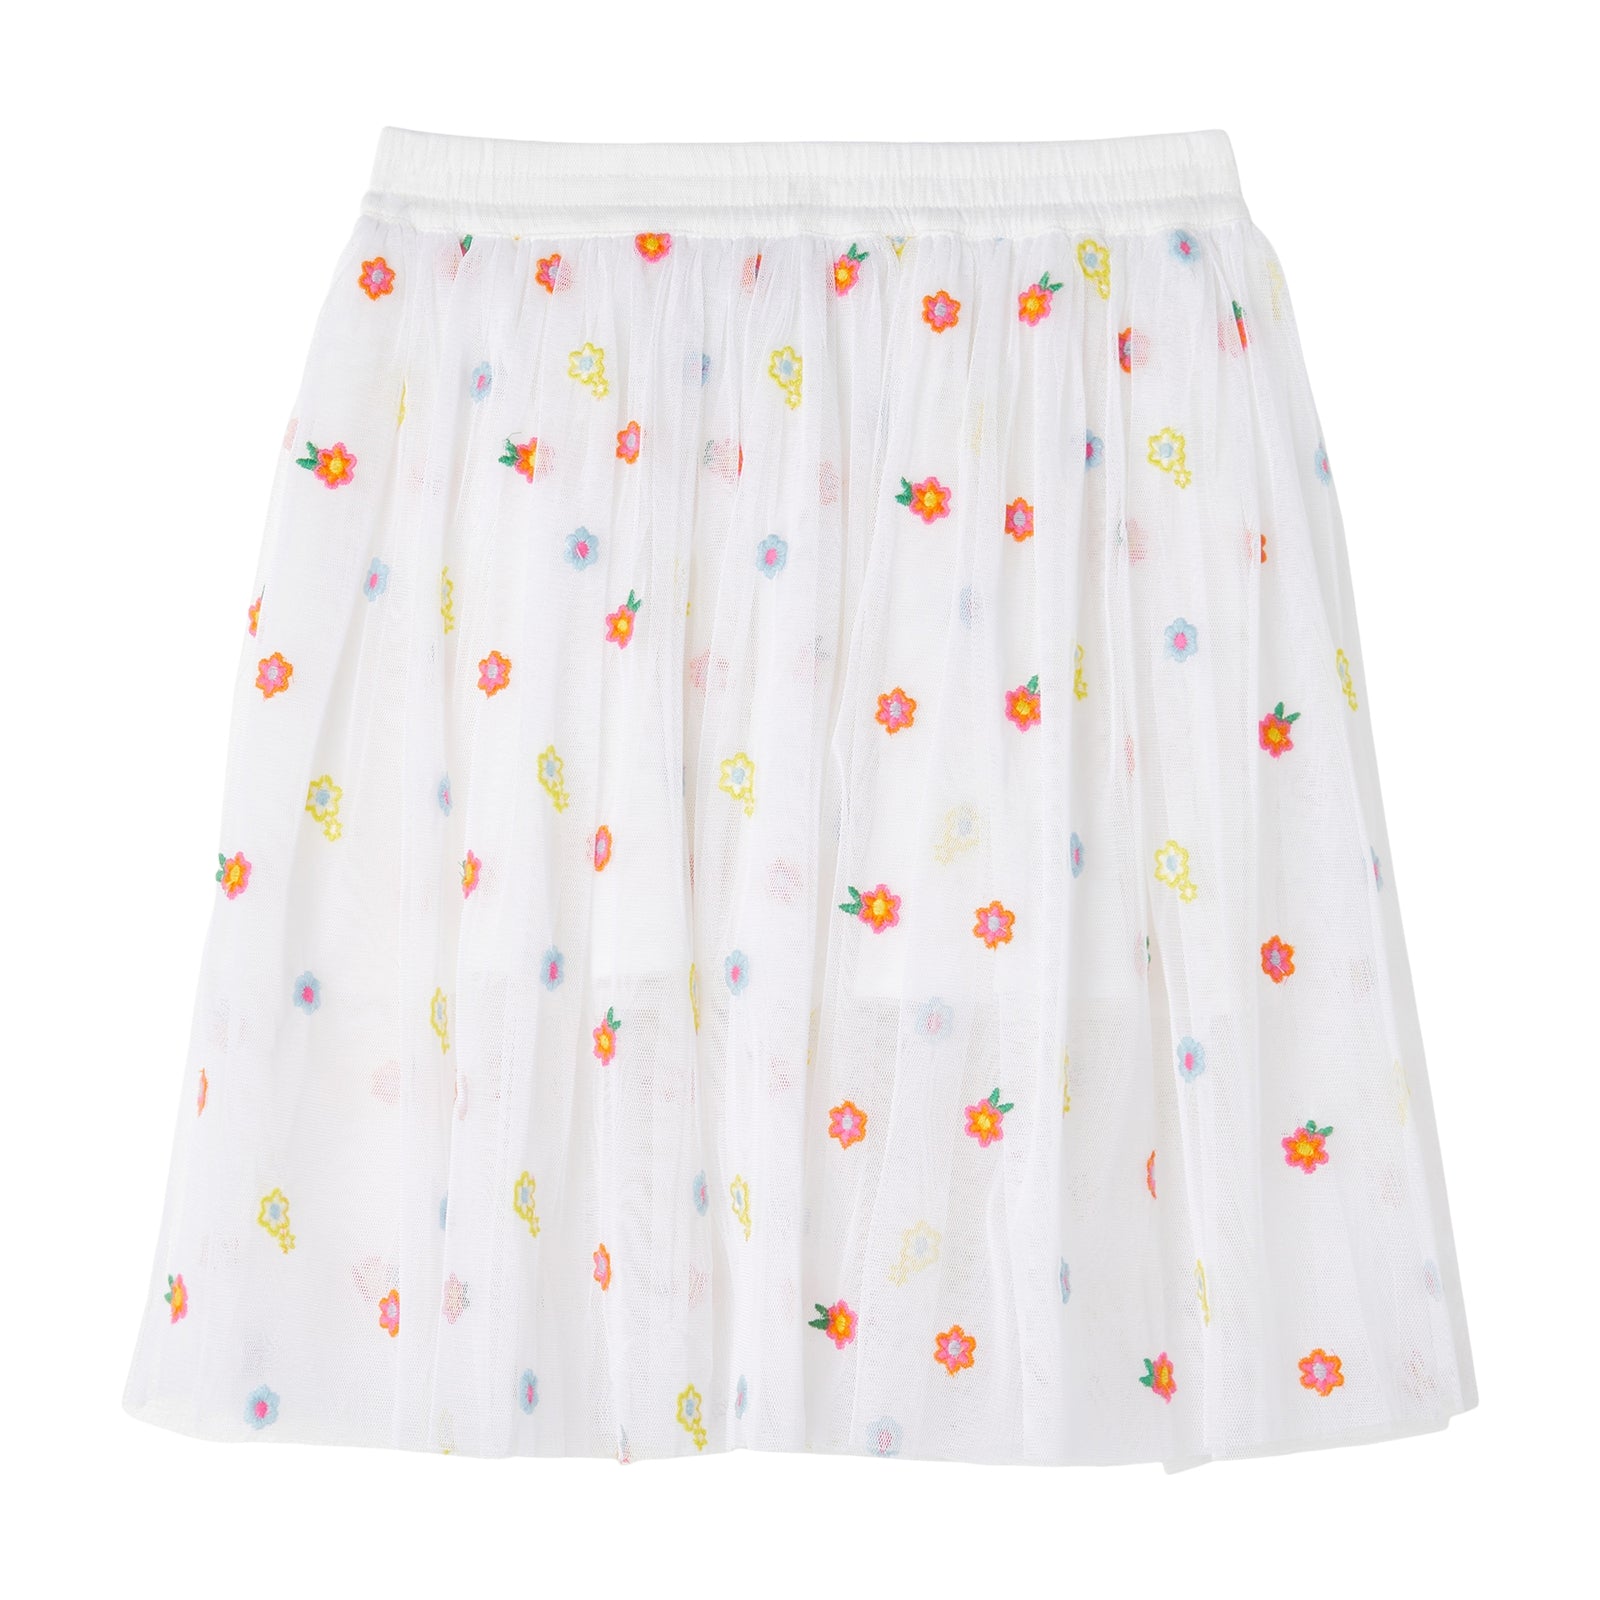 Girls White Embroidered Skirt